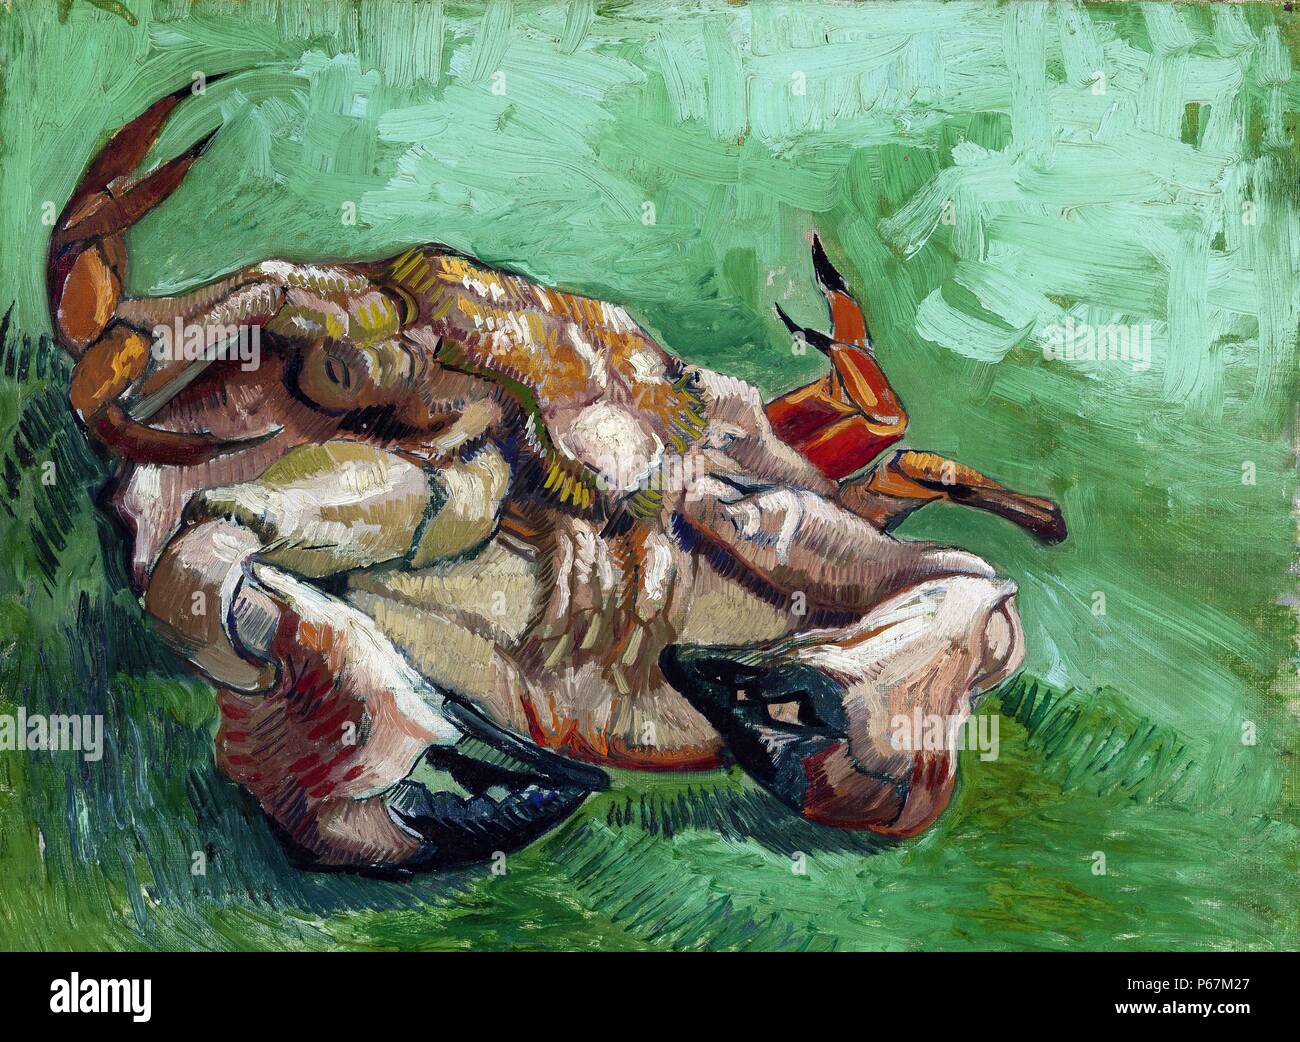 Gemälde mit dem Titel "A Crab" von Vincent Van Gogh (1853-1890) post-impressionistischen Maler niederländischer Herkunft. Datierte 1888 Stockfoto